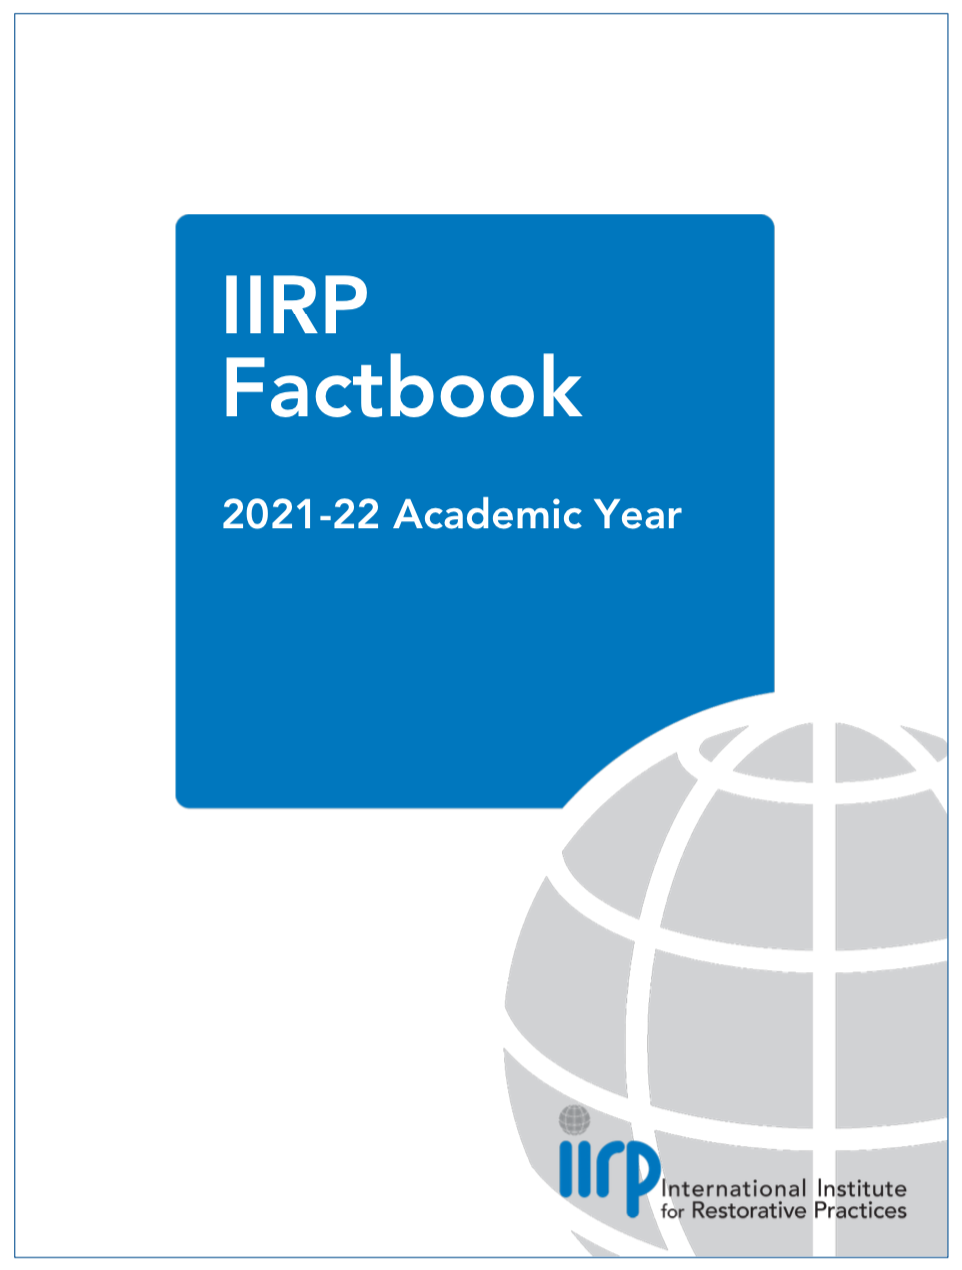 2020 21 IIRP Factbook Thumbnail